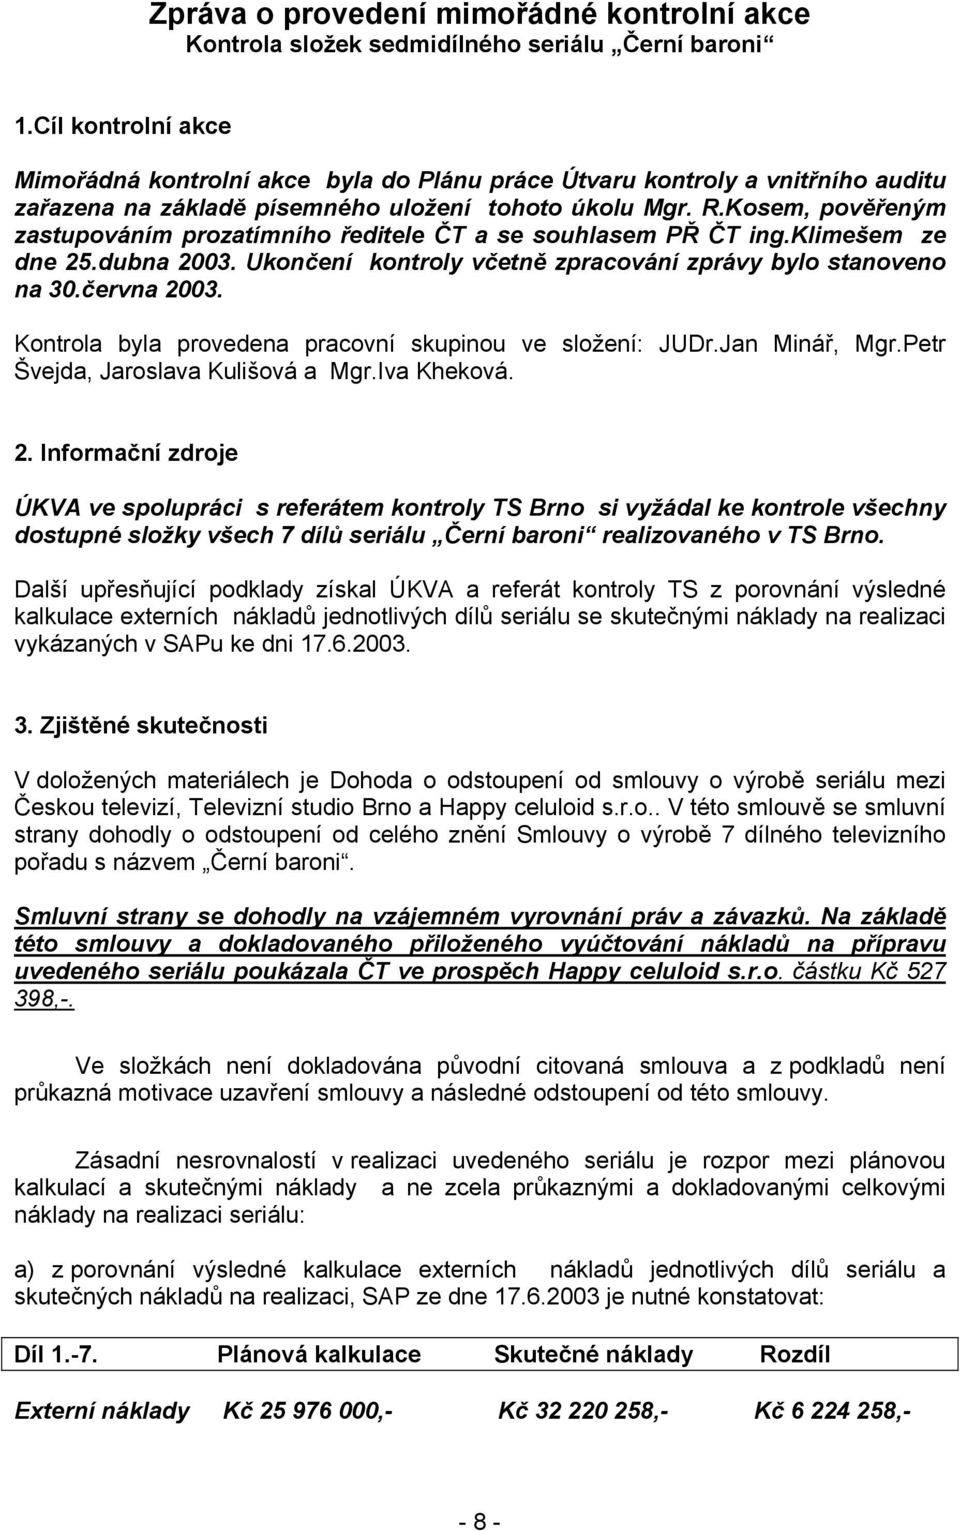 Kosem, pověřeným zastupováním prozatímního ředitele ČT a se souhlasem PŘ ČT ing.klimešem ze dne 25.dubna 2003. Ukončení kontroly včetně zpracování zprávy bylo stanoveno na 30.června 2003.